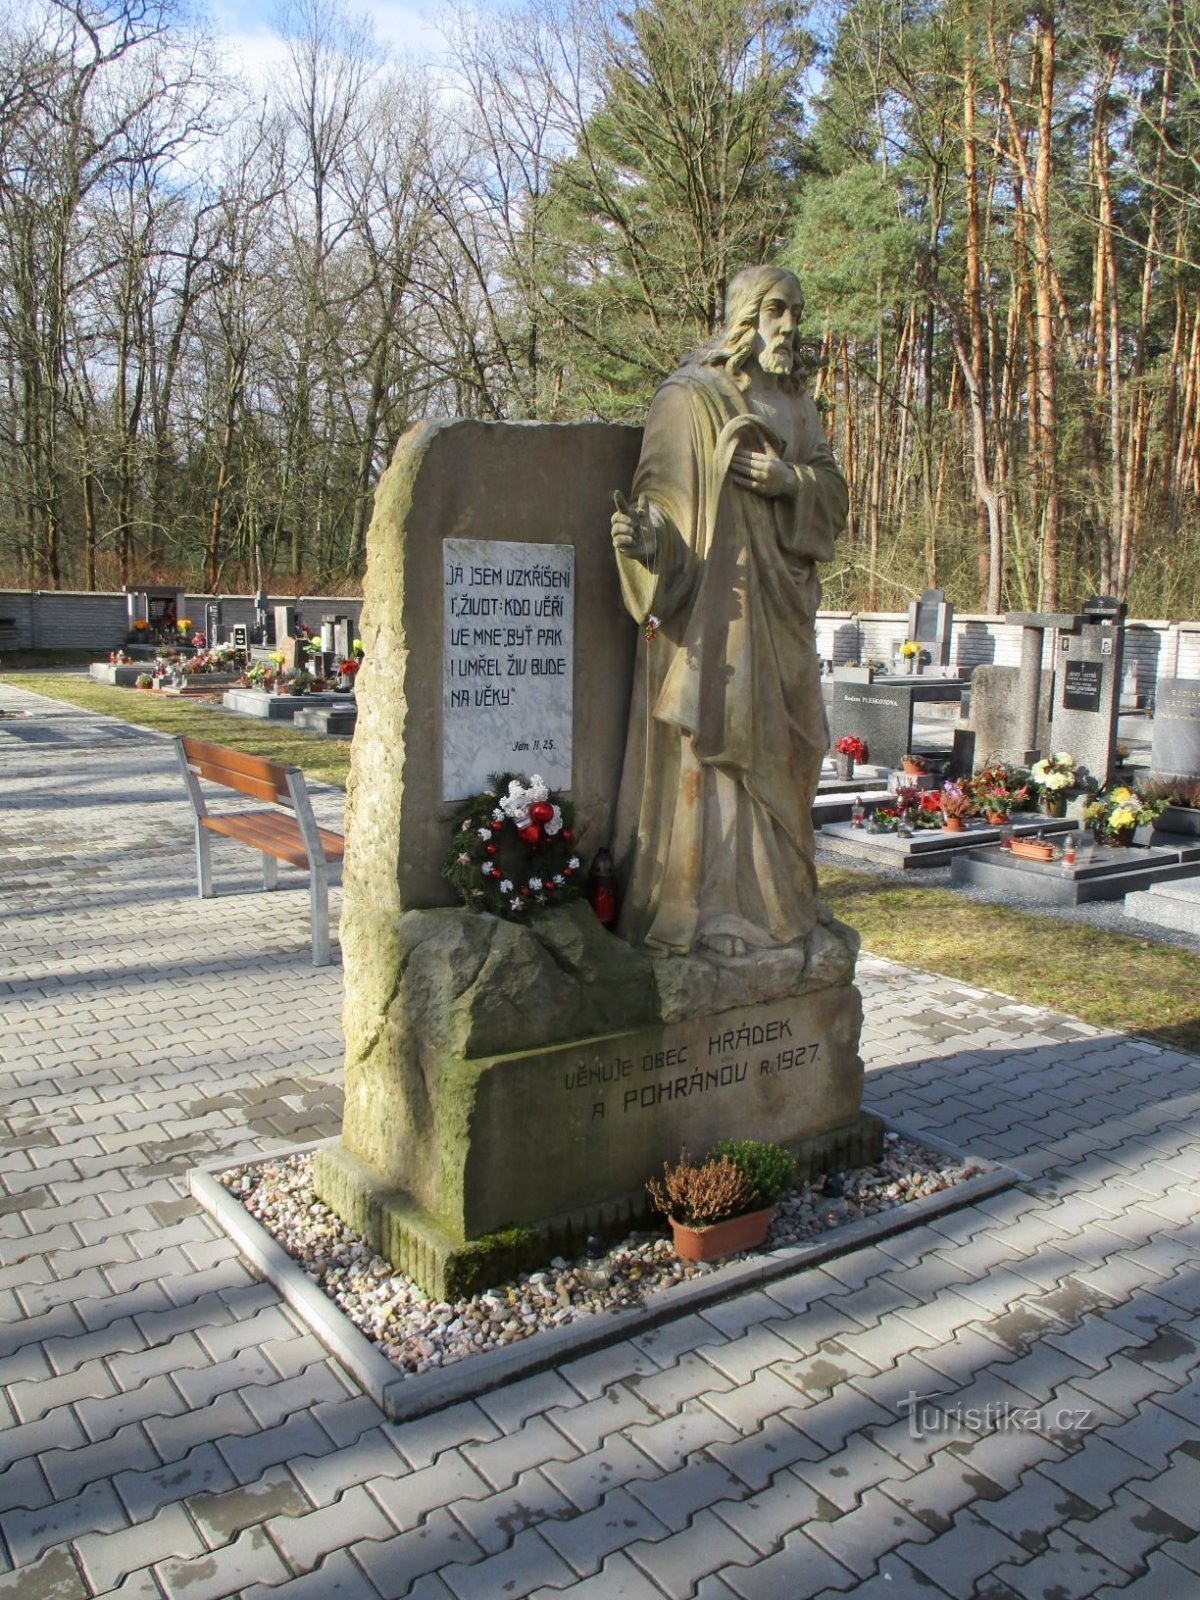 Statue af Jesus Kristus på kirkegården (Hrádek, 20.2.2020/XNUMX/XNUMX)